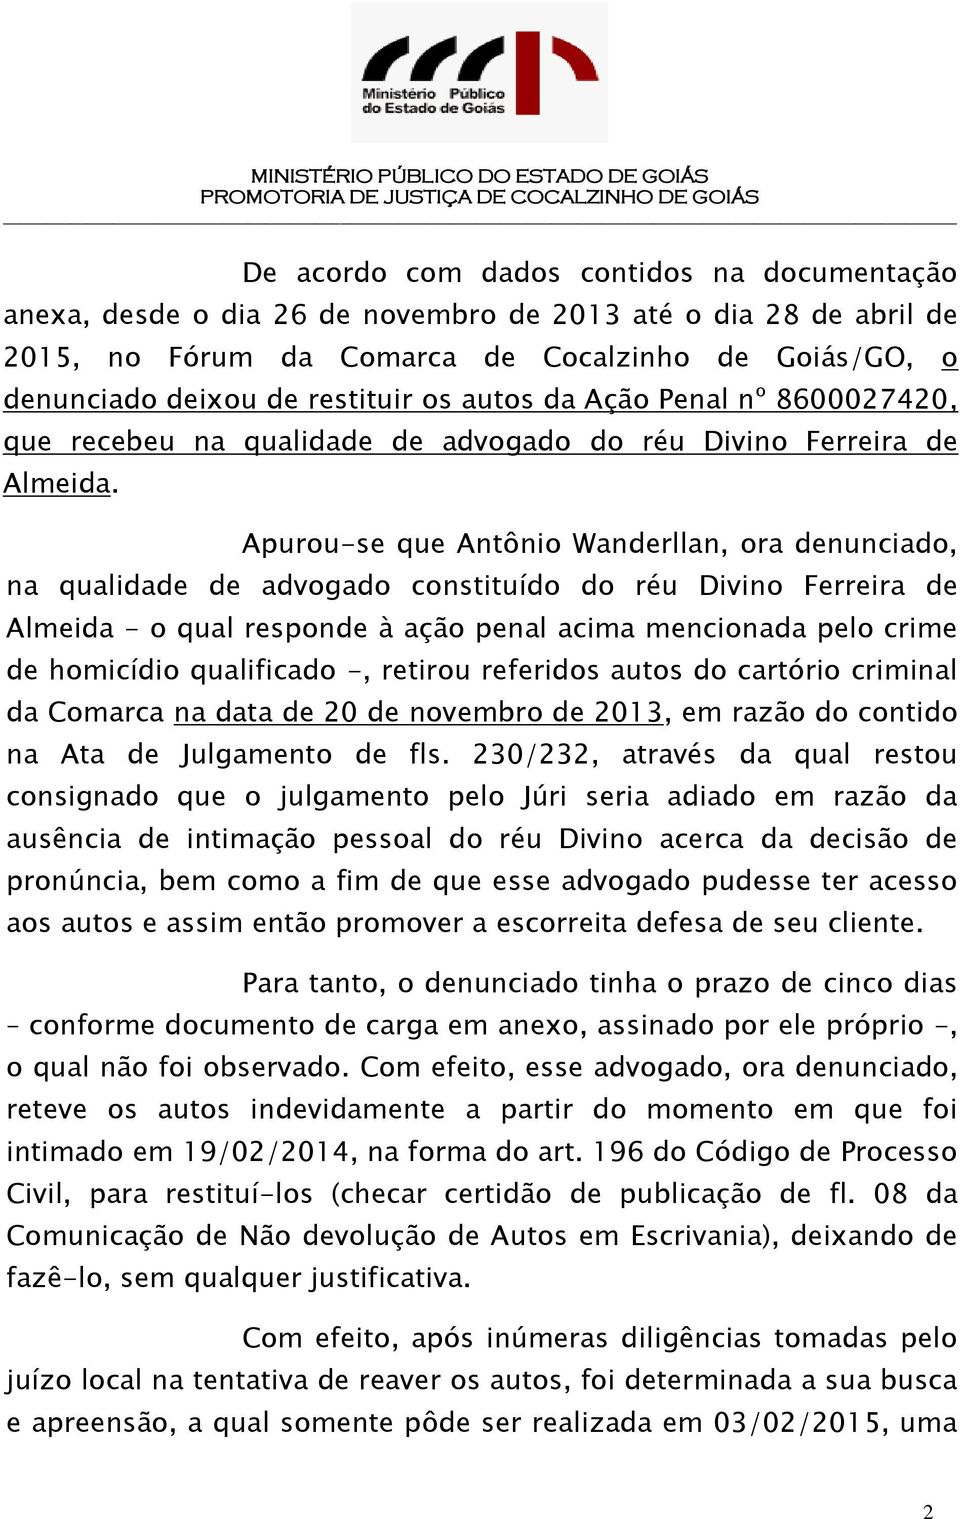 Apurou-se que Antônio Wanderllan, ora denunciado, na qualidade de advogado constituído do réu Divino Ferreira de Almeida - o qual responde à ação penal acima mencionada pelo crime de homicídio